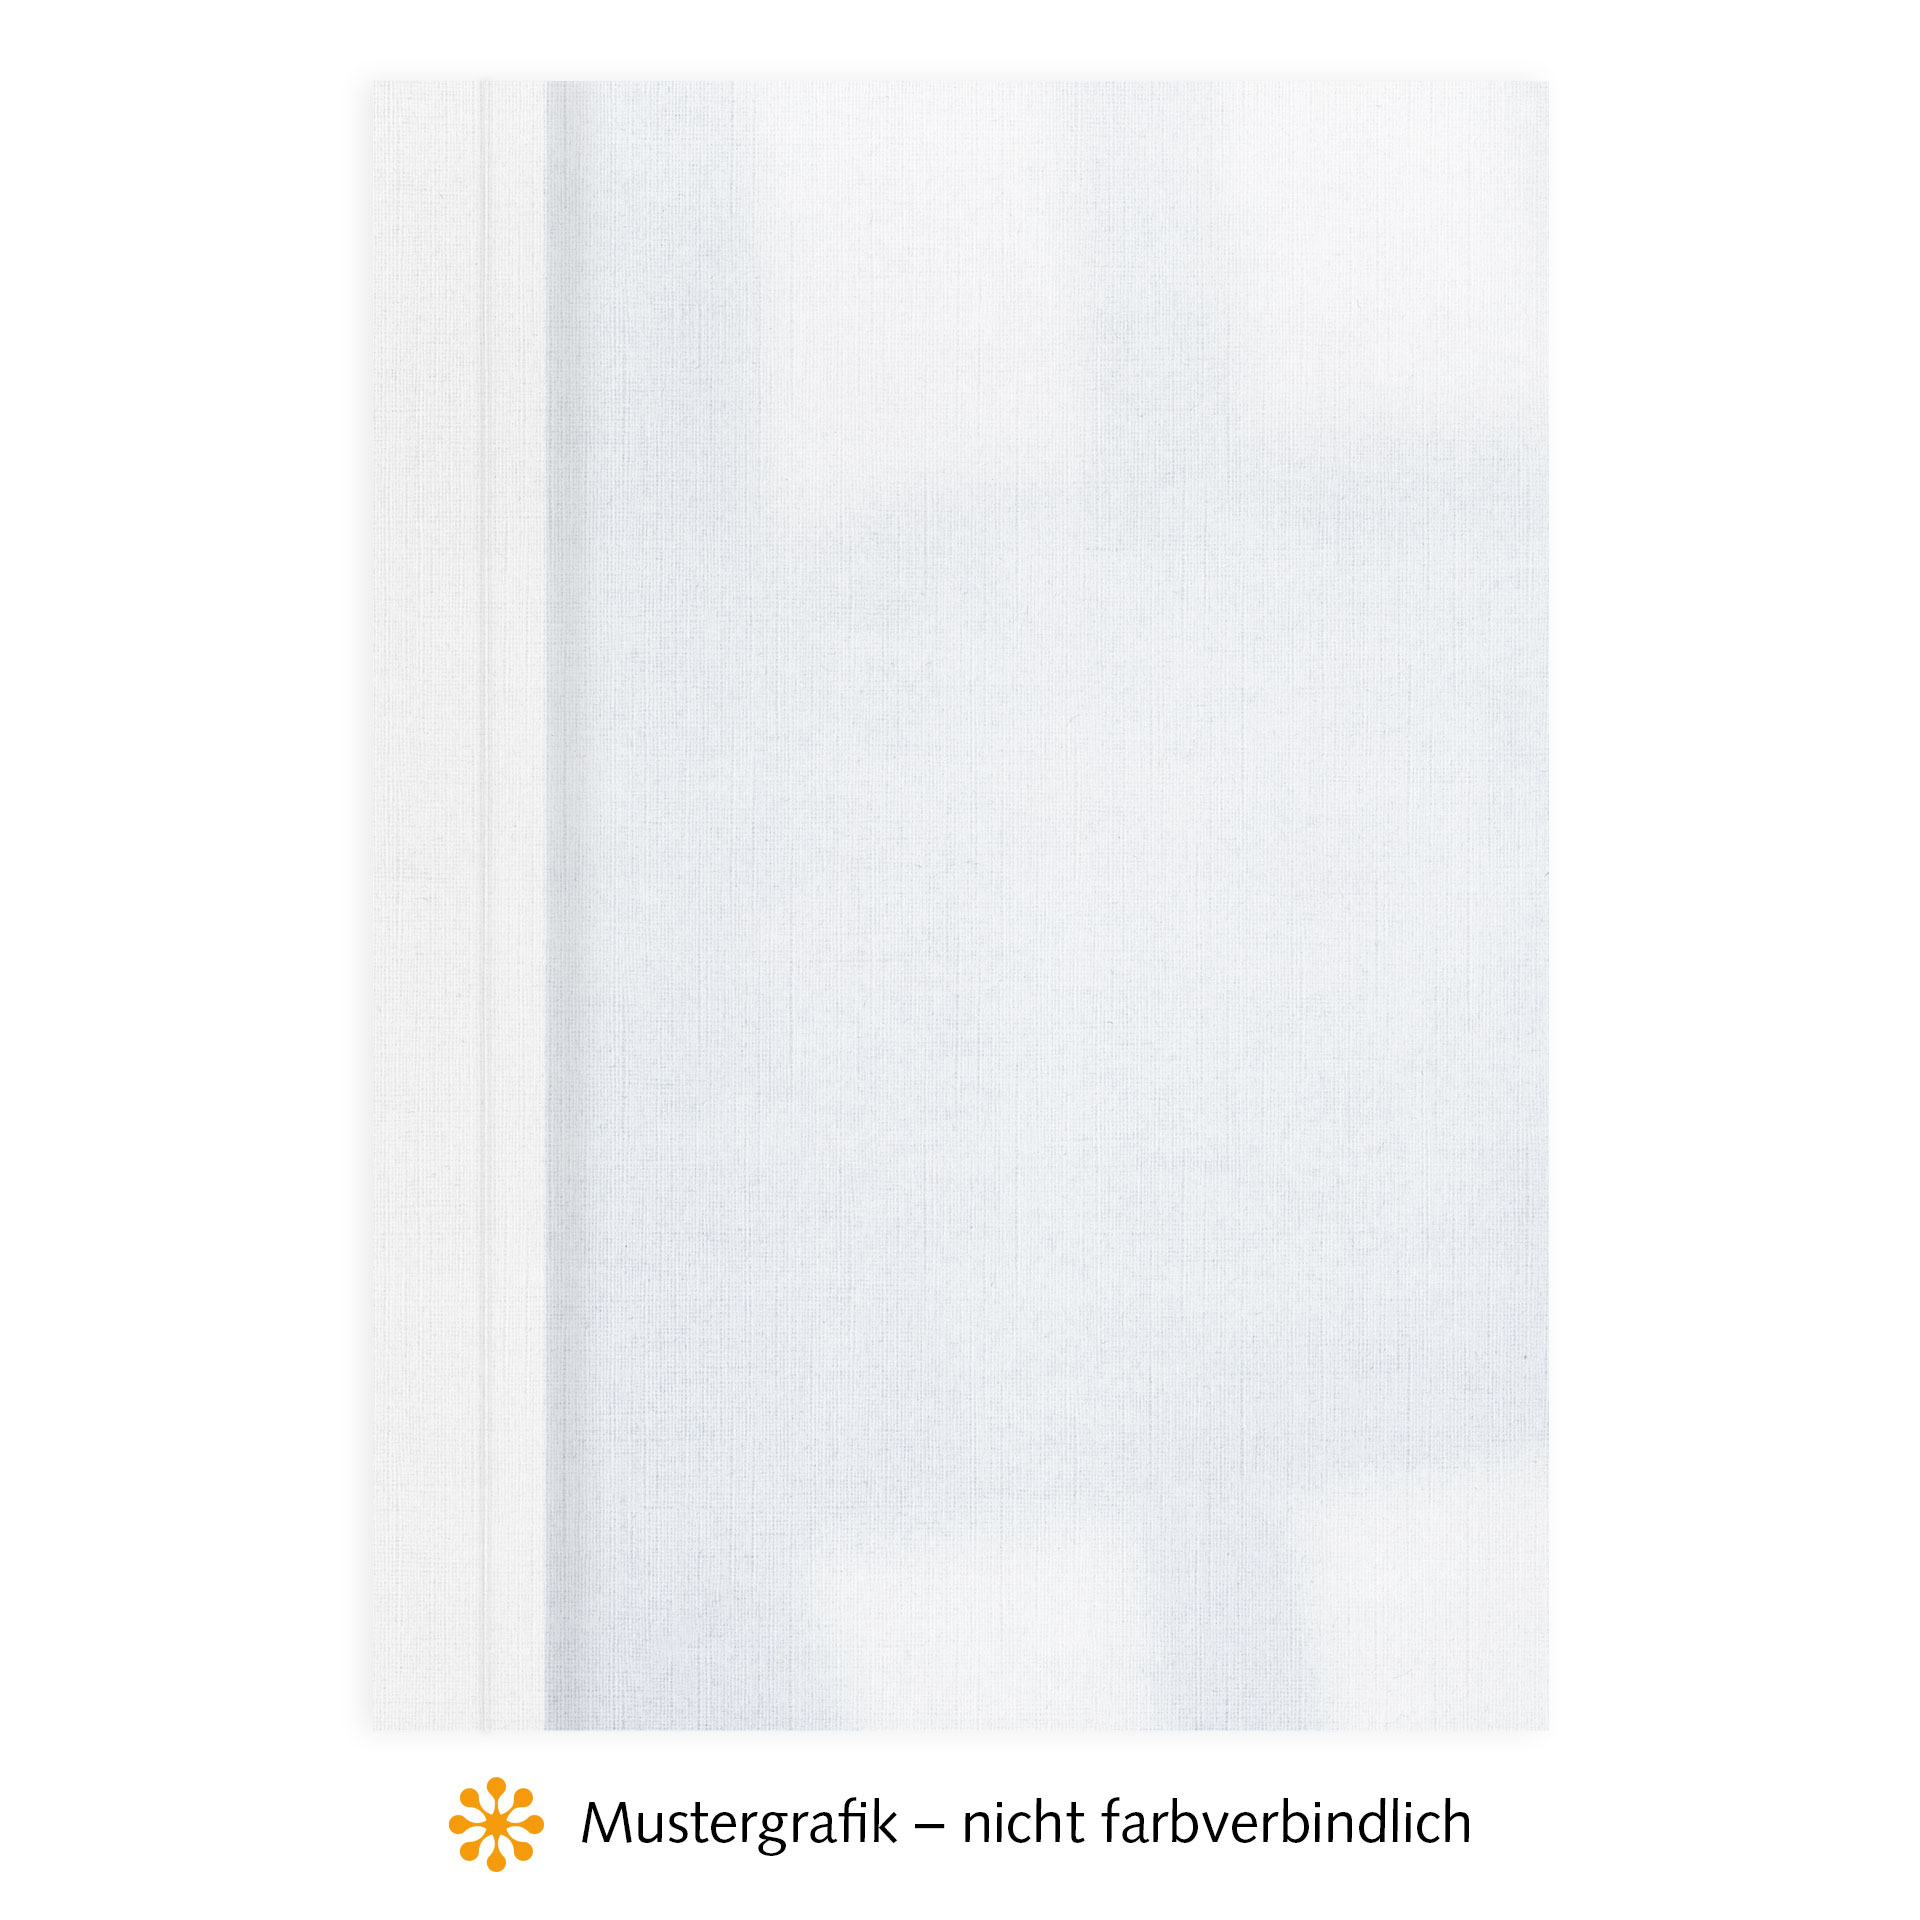 Ösenmappen DUO Cover, Vorderseite Folie KLAR transparent, Rückseite Karton Leinen, Weiß, 1 mm, 1 bis 10 Blatt